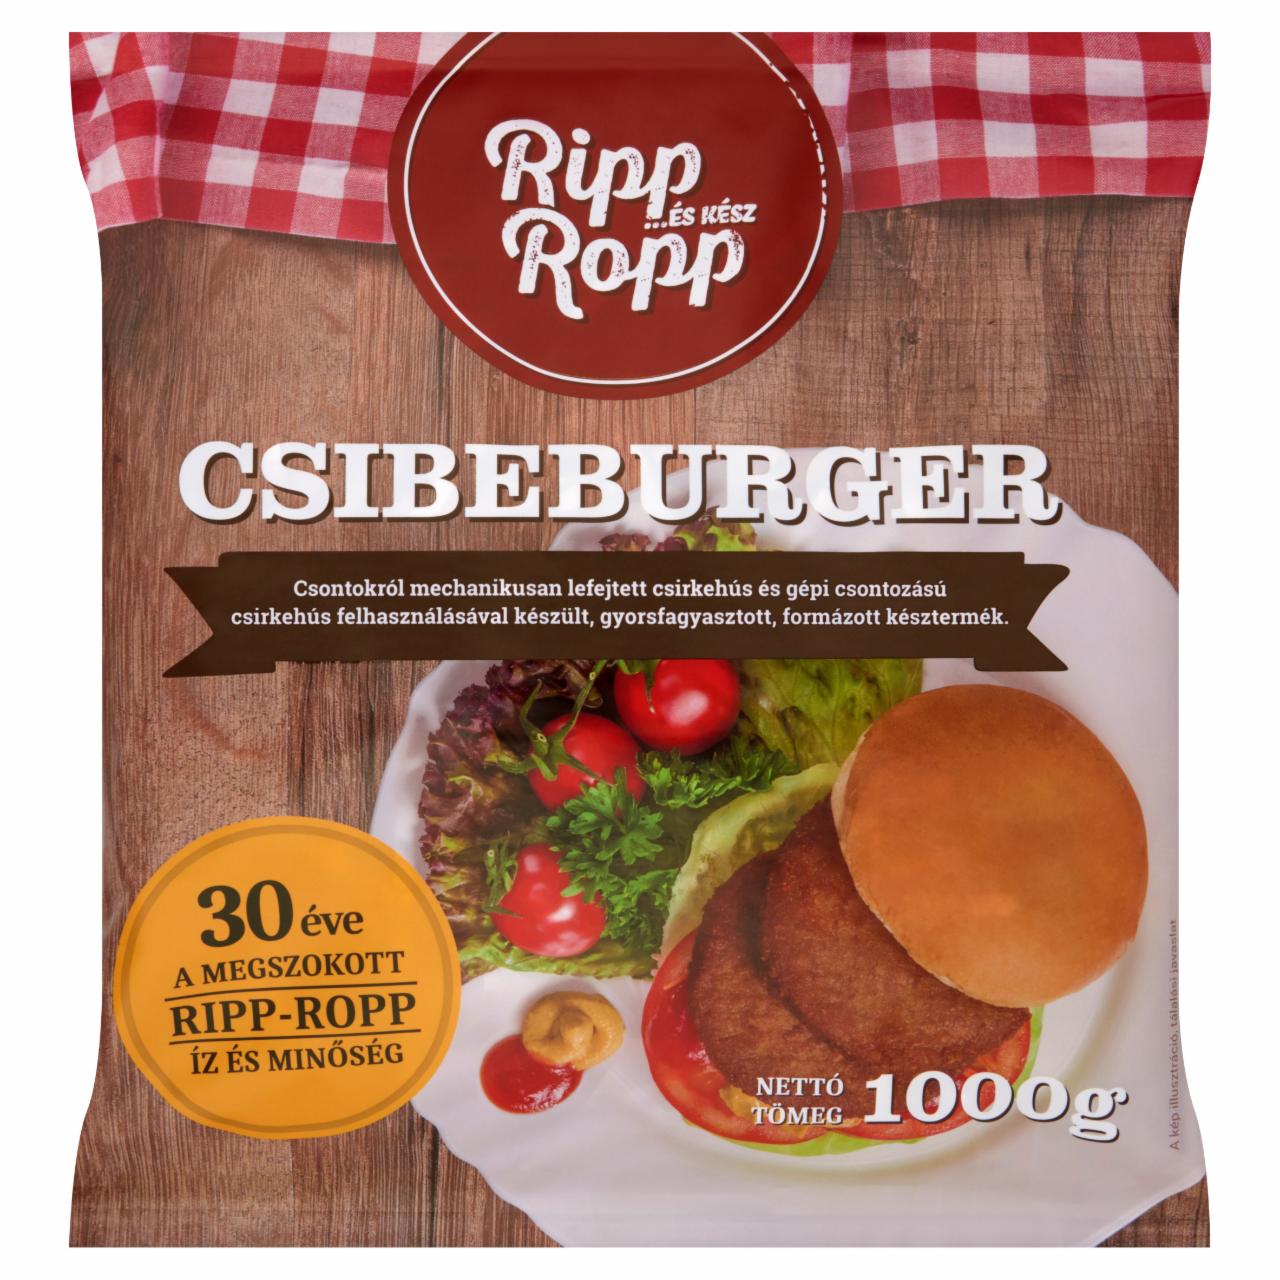 Képek - Ripp-Ropp gyorsfagyasztott csibeburger 1000 g